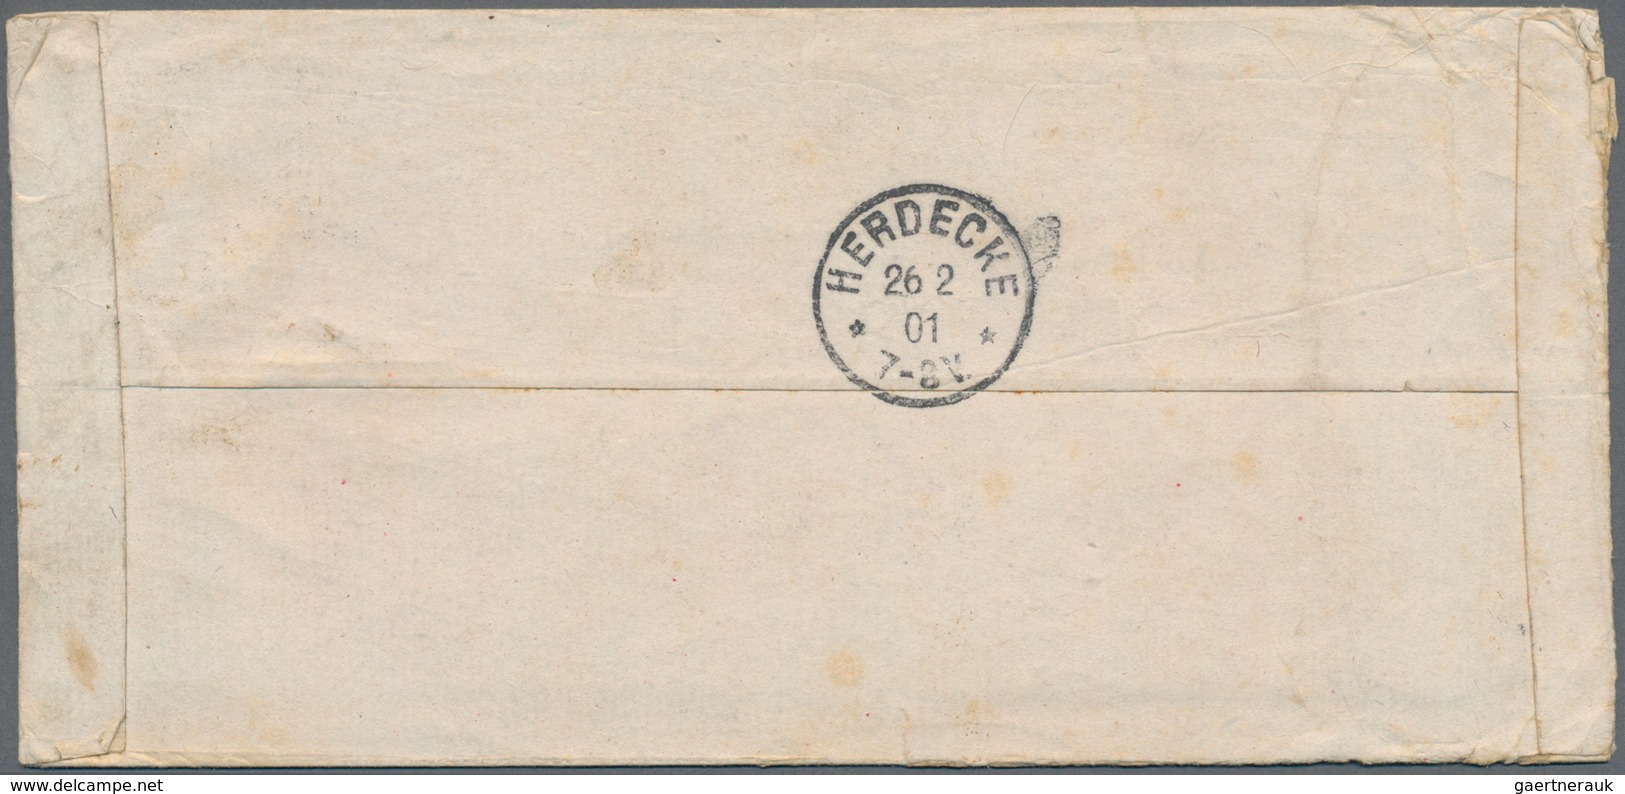 Deutsche Post In China: 1901, "PEKING 11/1 01 DP" K1 Auf Feldpost-Zierbrief Nach Herdecke/Deutschlan - Chine (bureaux)